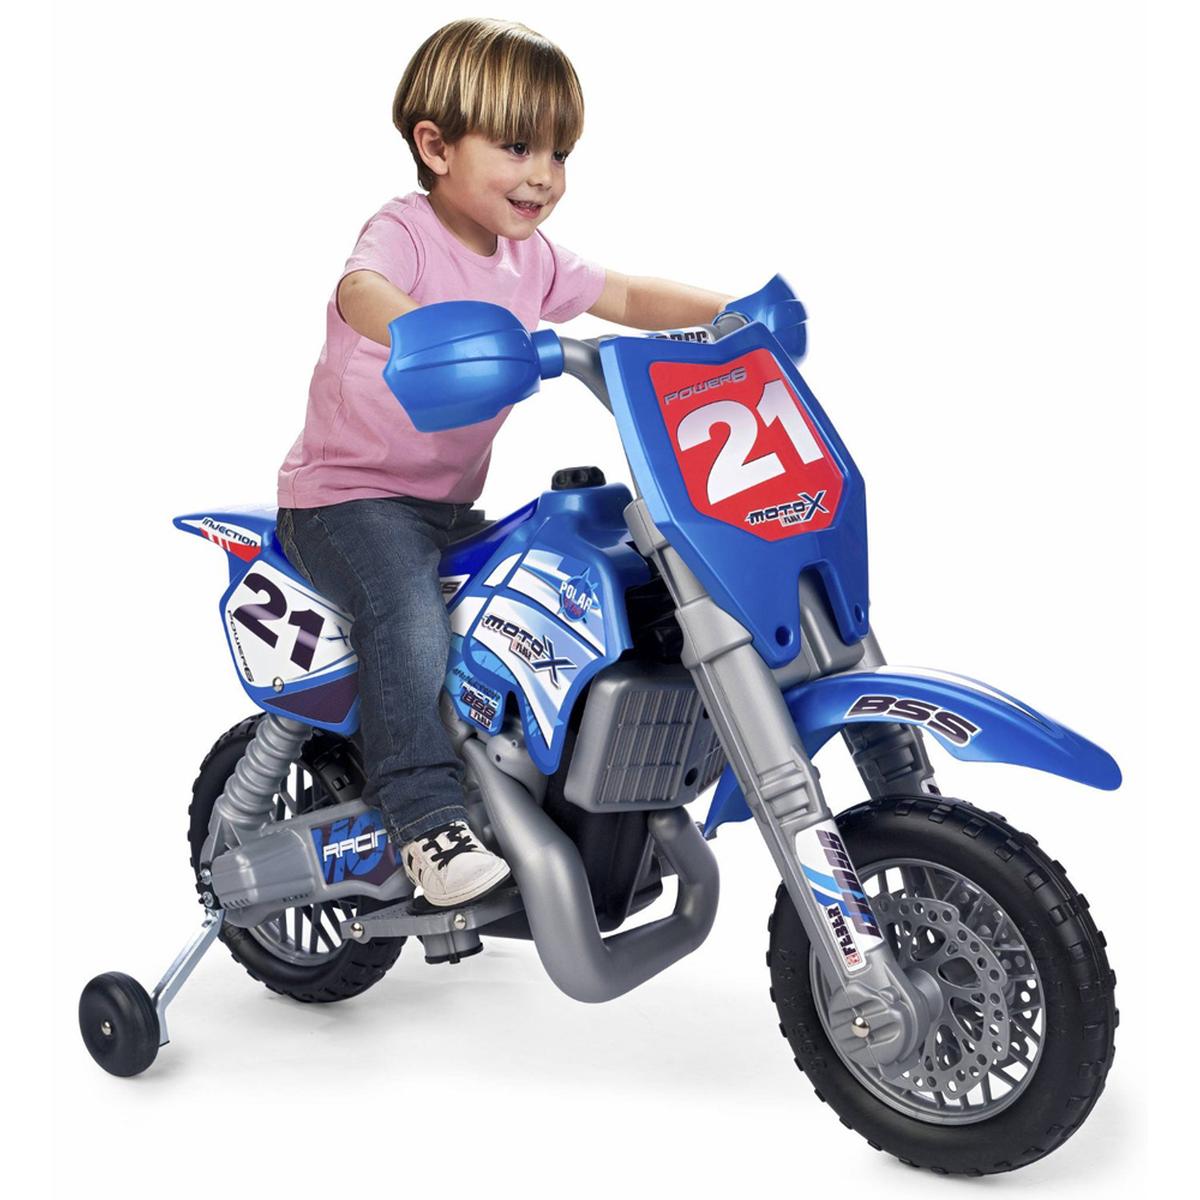 Motocross infantil. Uma mini moto, um capacete e muita diversão